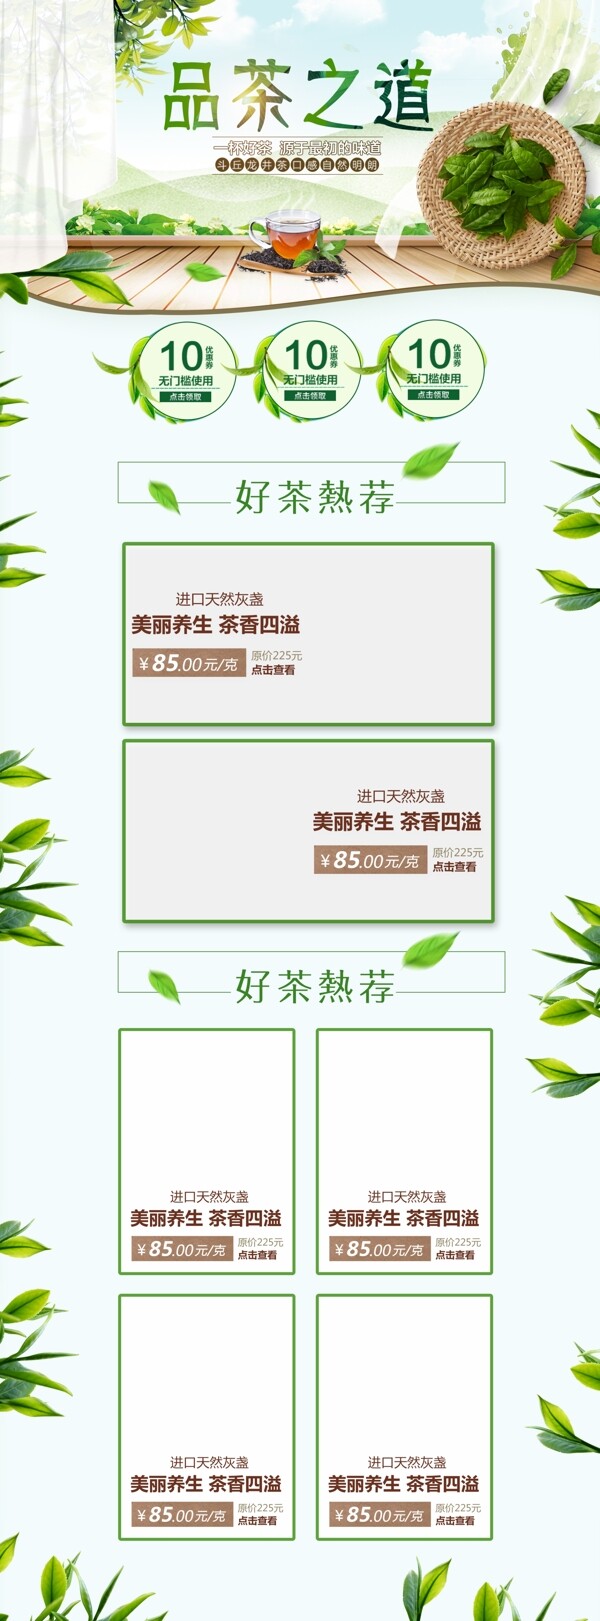 茶饮浅色清新简约绿色电商淘宝首页模版